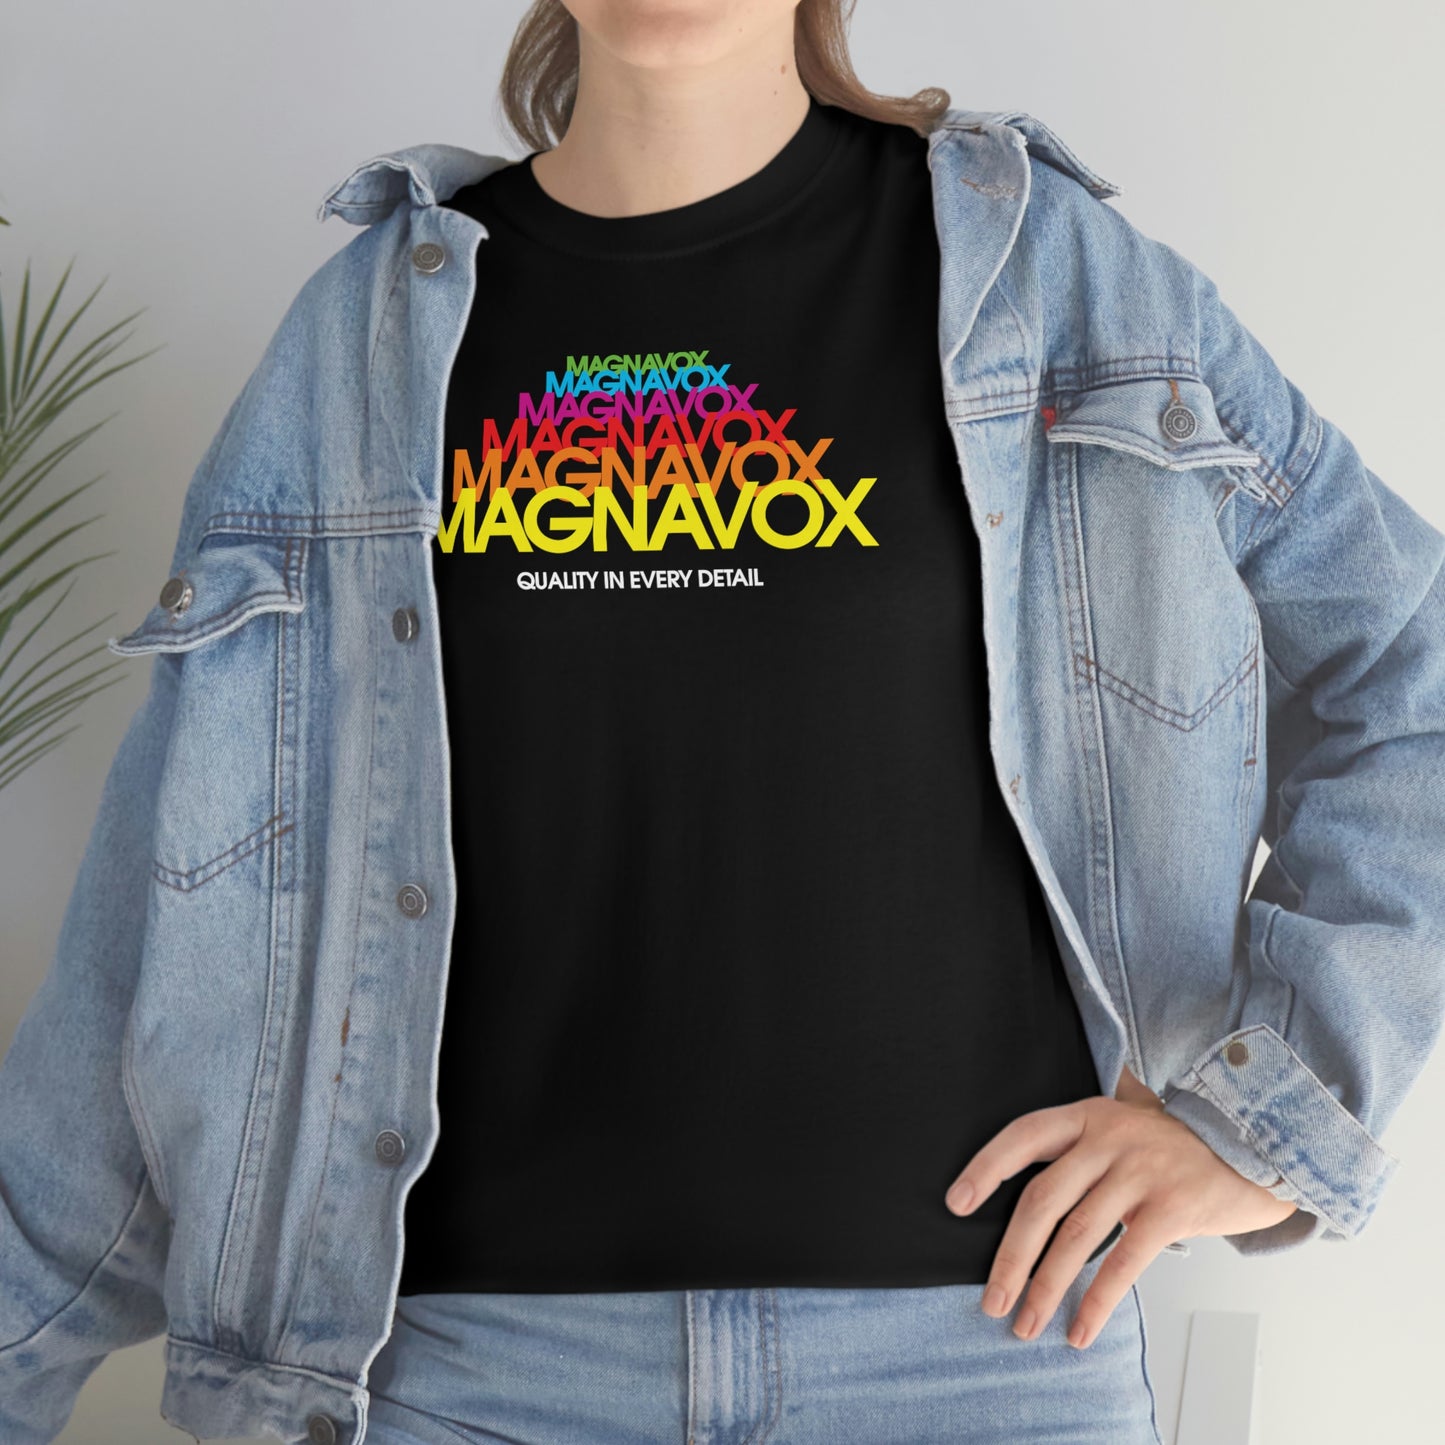 Magnavox T-Shirt